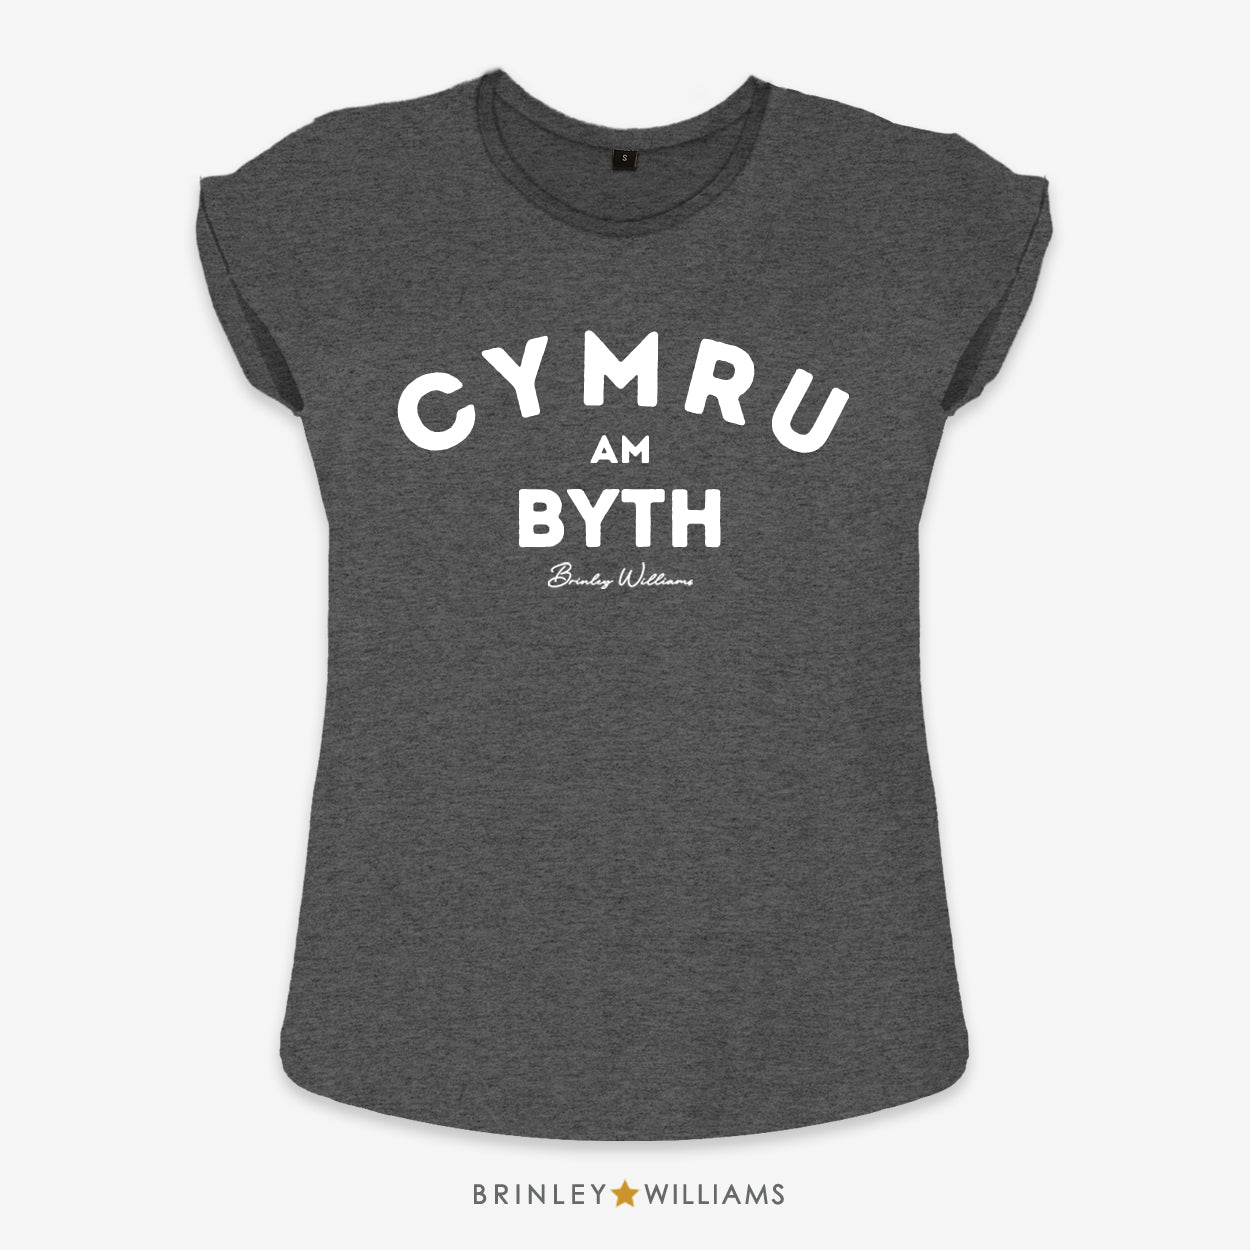 Cymru am Byth Rolled Sleeve T-shirt - Charcoal